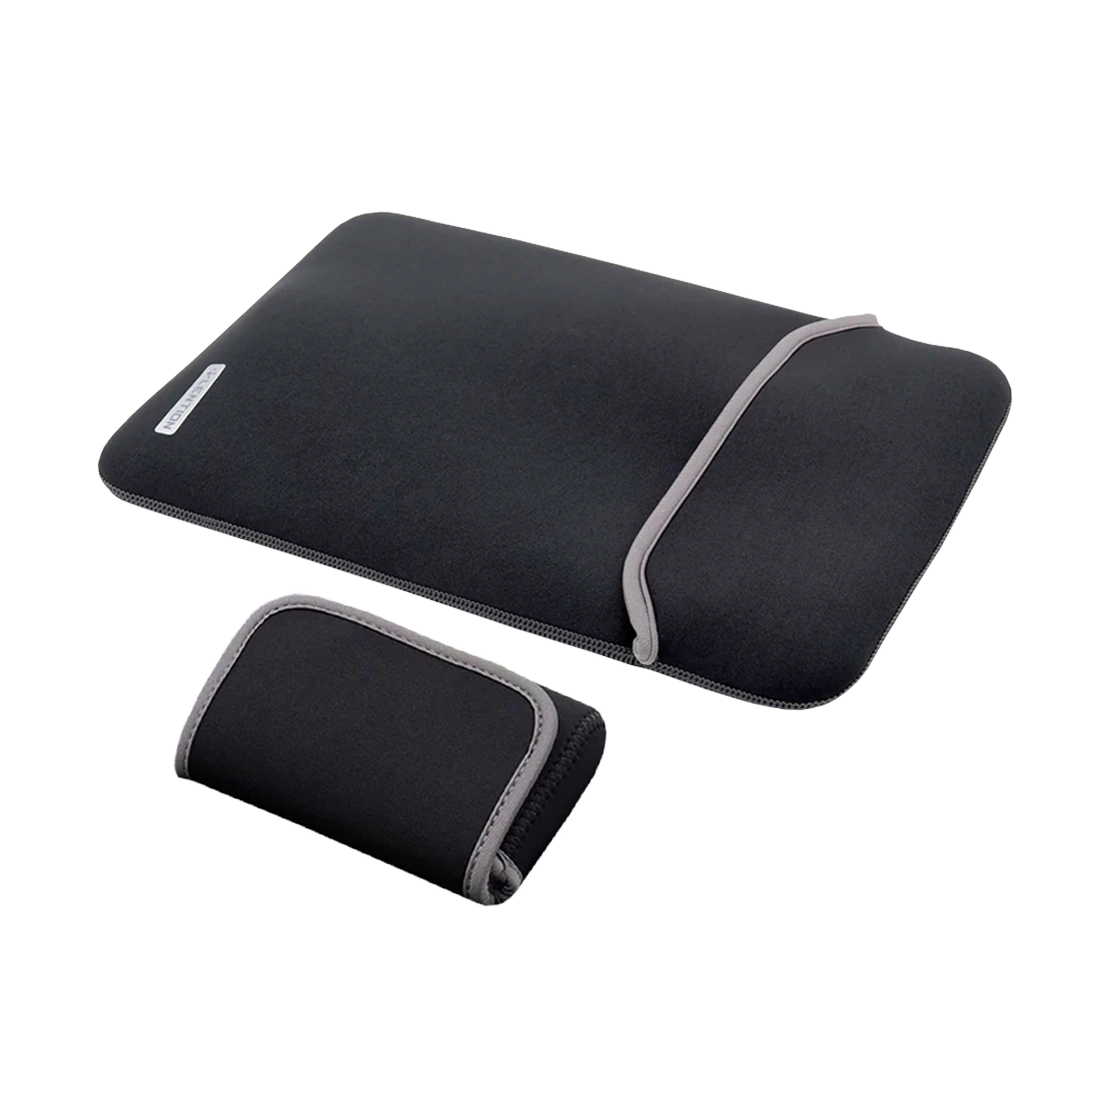 کیف مک بوک 14 اینچی و کیف لوازم جانبی لنشن مدل PCB-B415